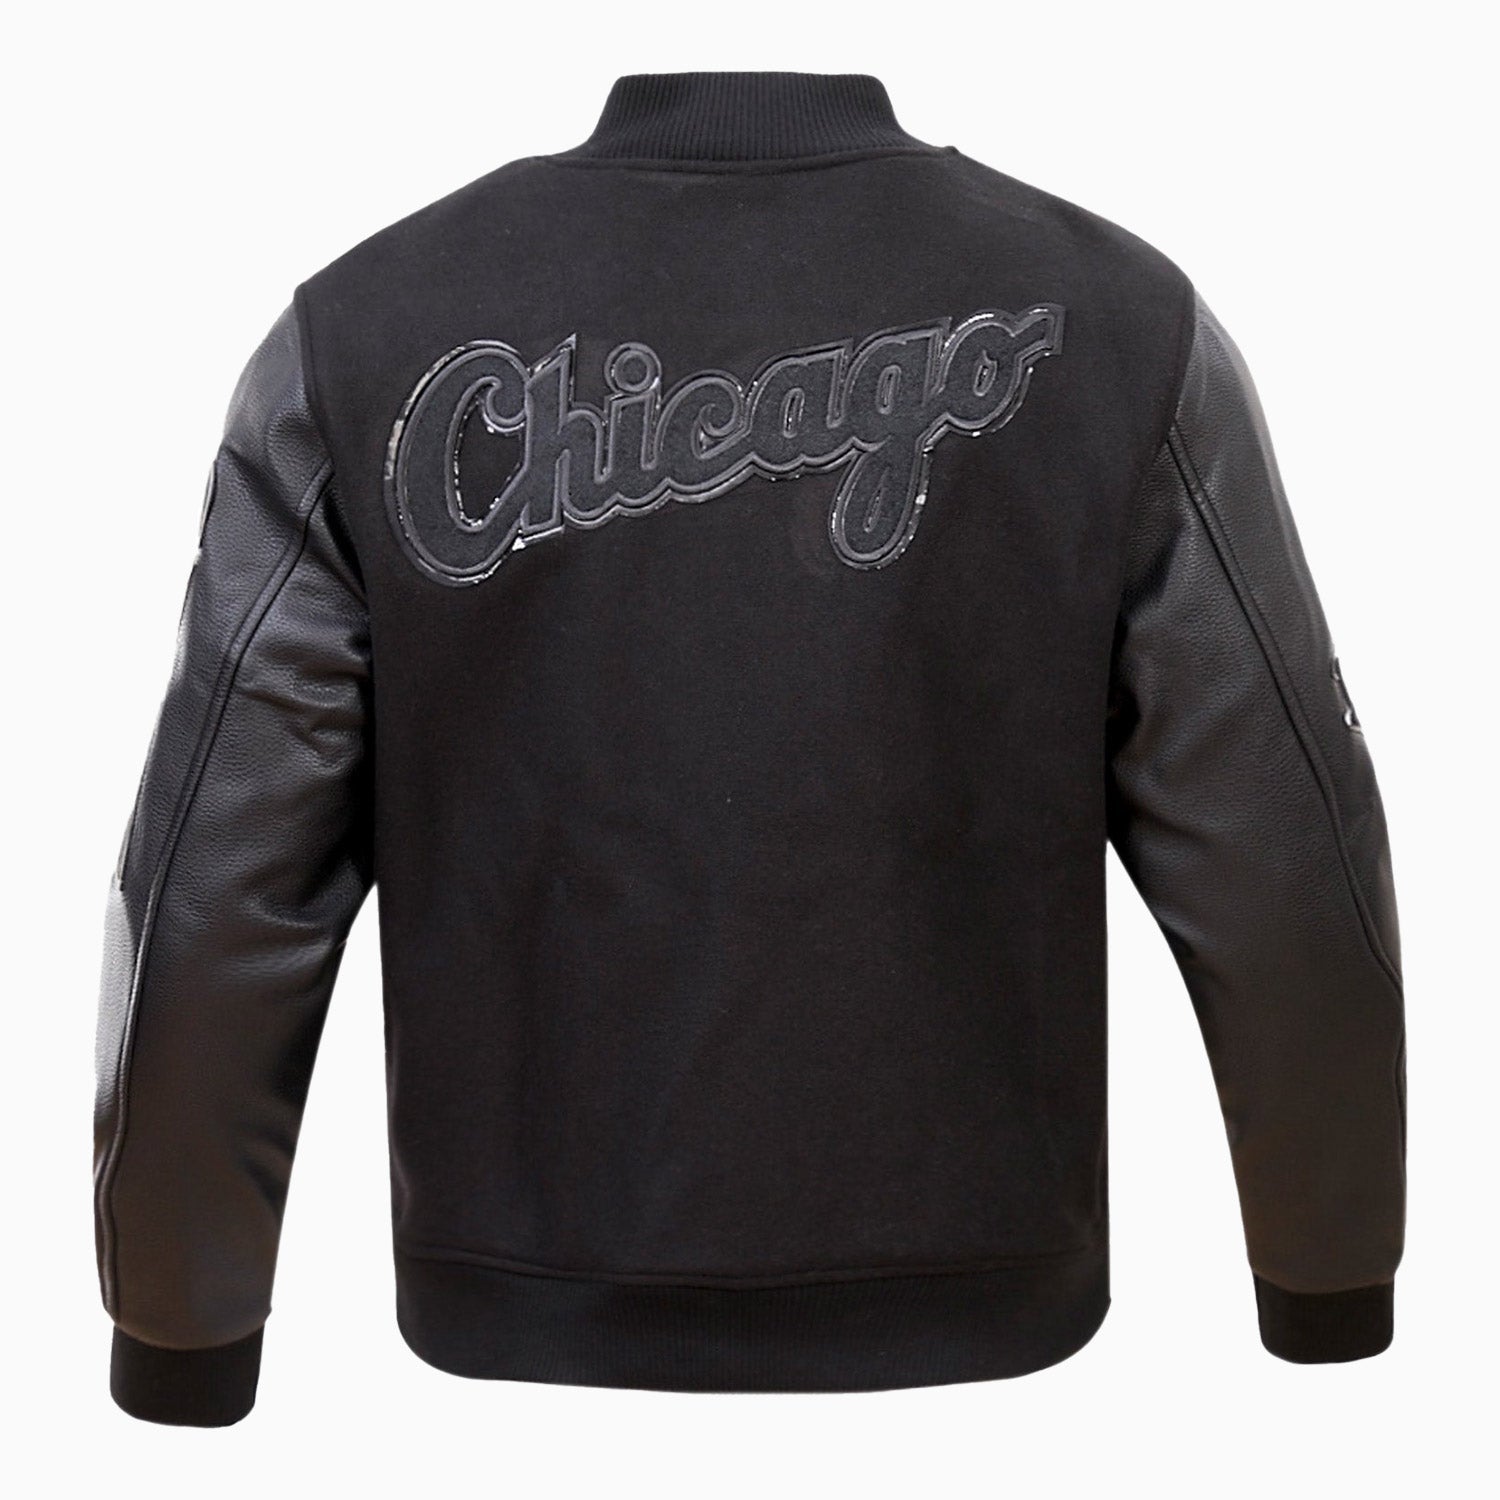 pro-standard-mens-chicago-white-sox-mlb-varsity-jacket-lcw632572-3bk